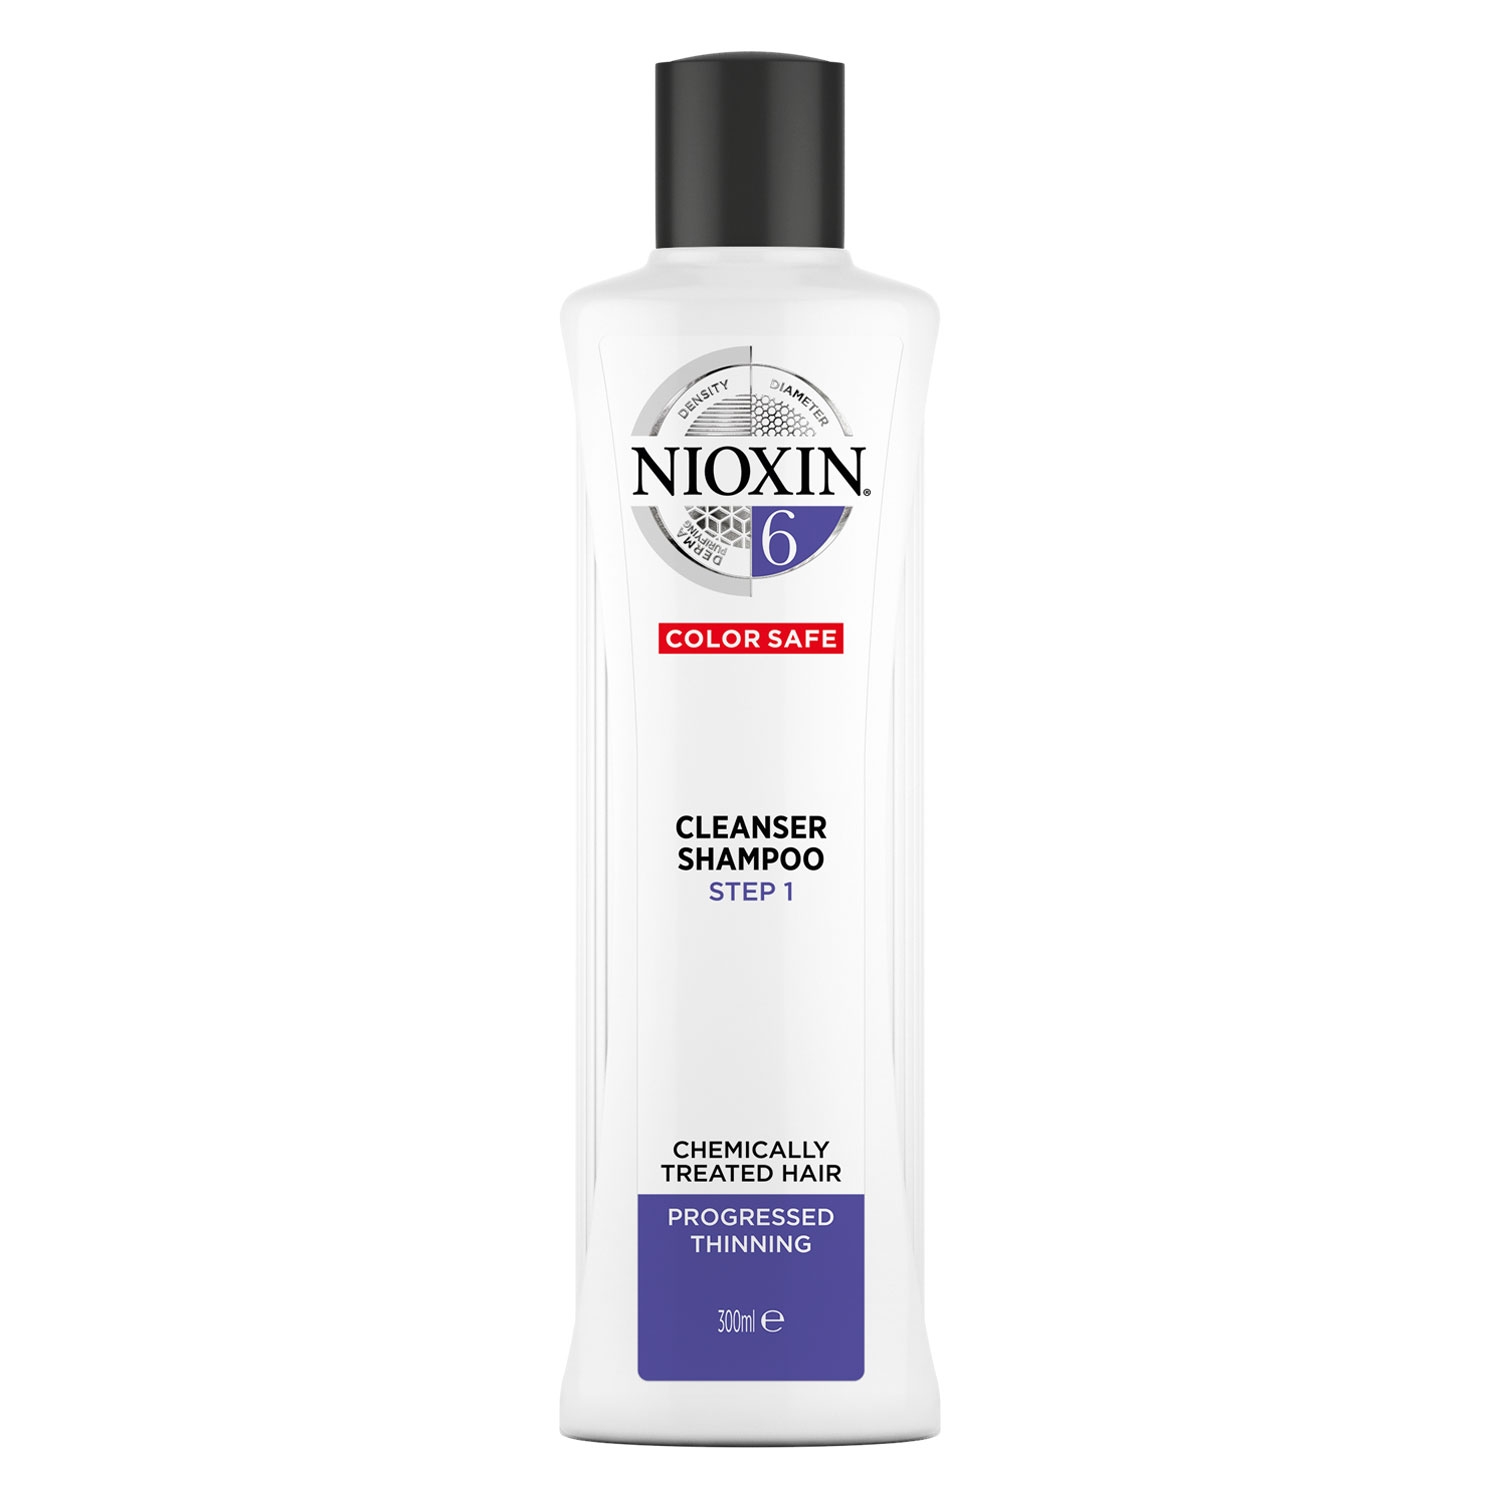 Produktbild von Nioxin - Cleanser Shampoo 6